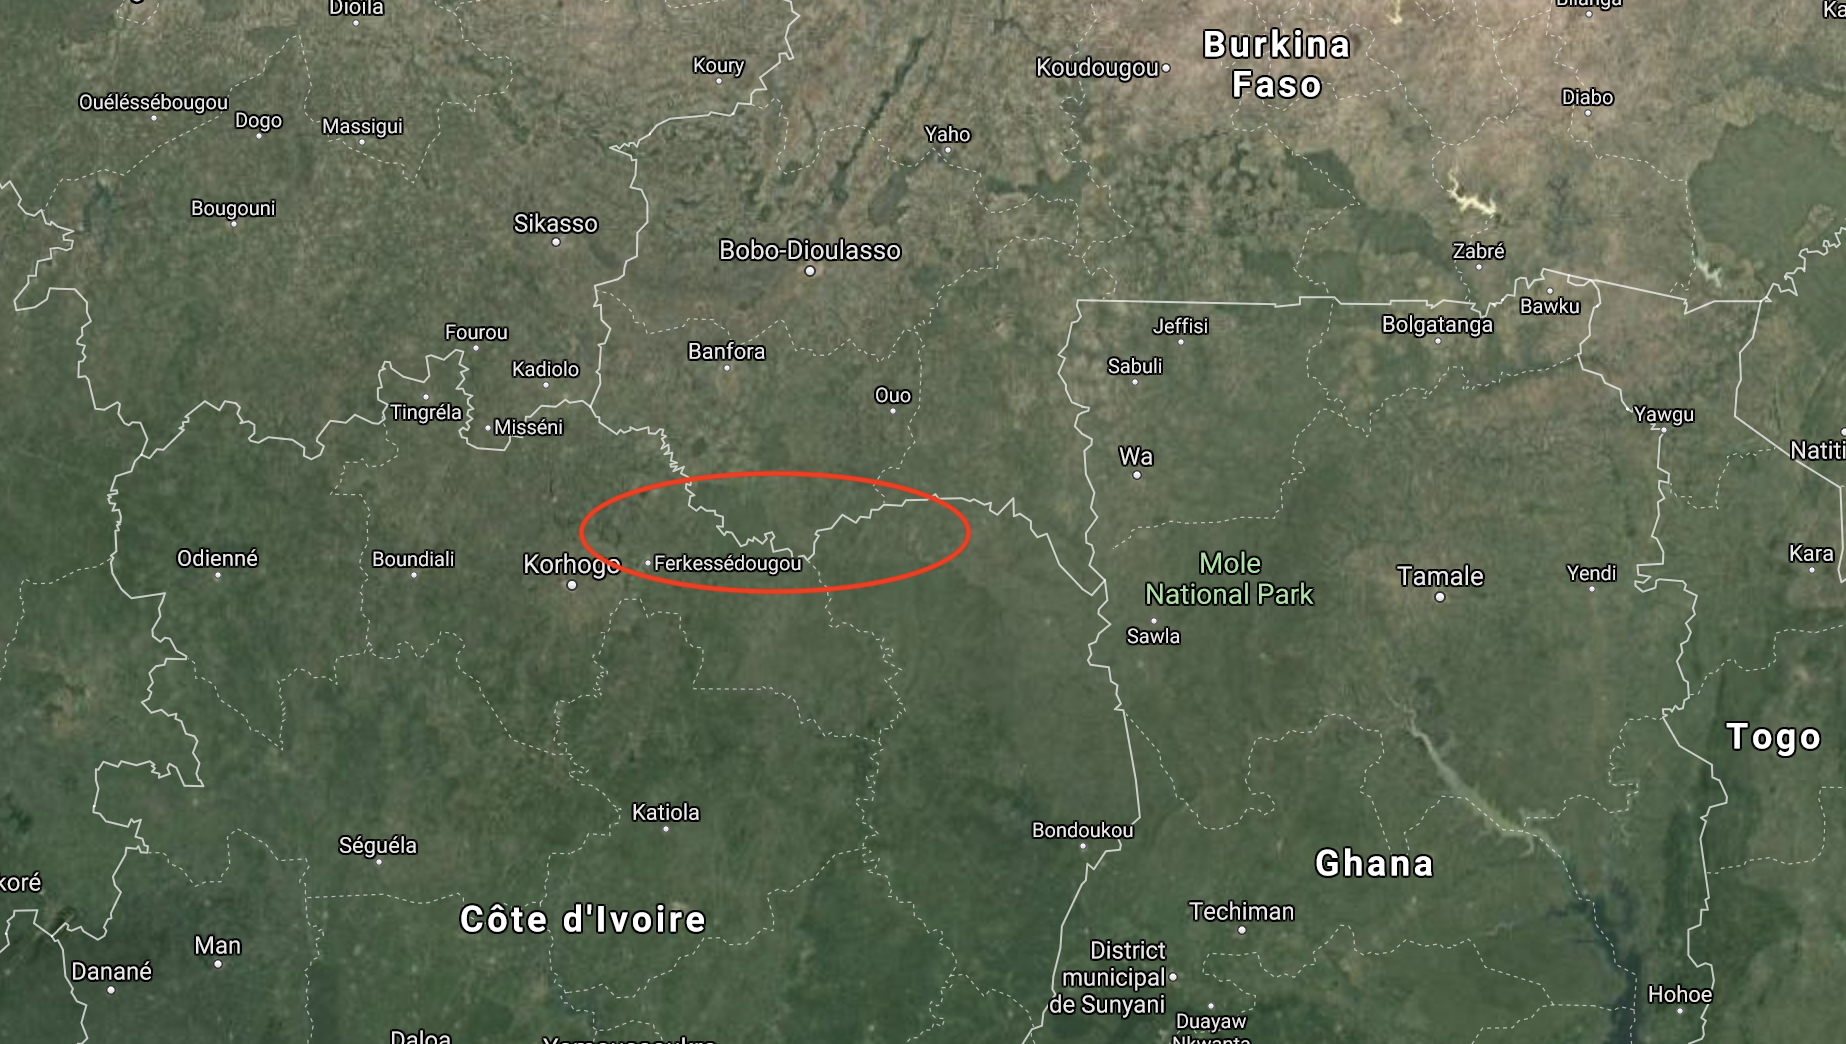 C'est dans la zone surlignée en rouge qu'a lieu l'opération militaire conjointe du Burkina Faso et de la Côte d'Ivoire, afin de débusquer les cellules terroristes actives dans la région.